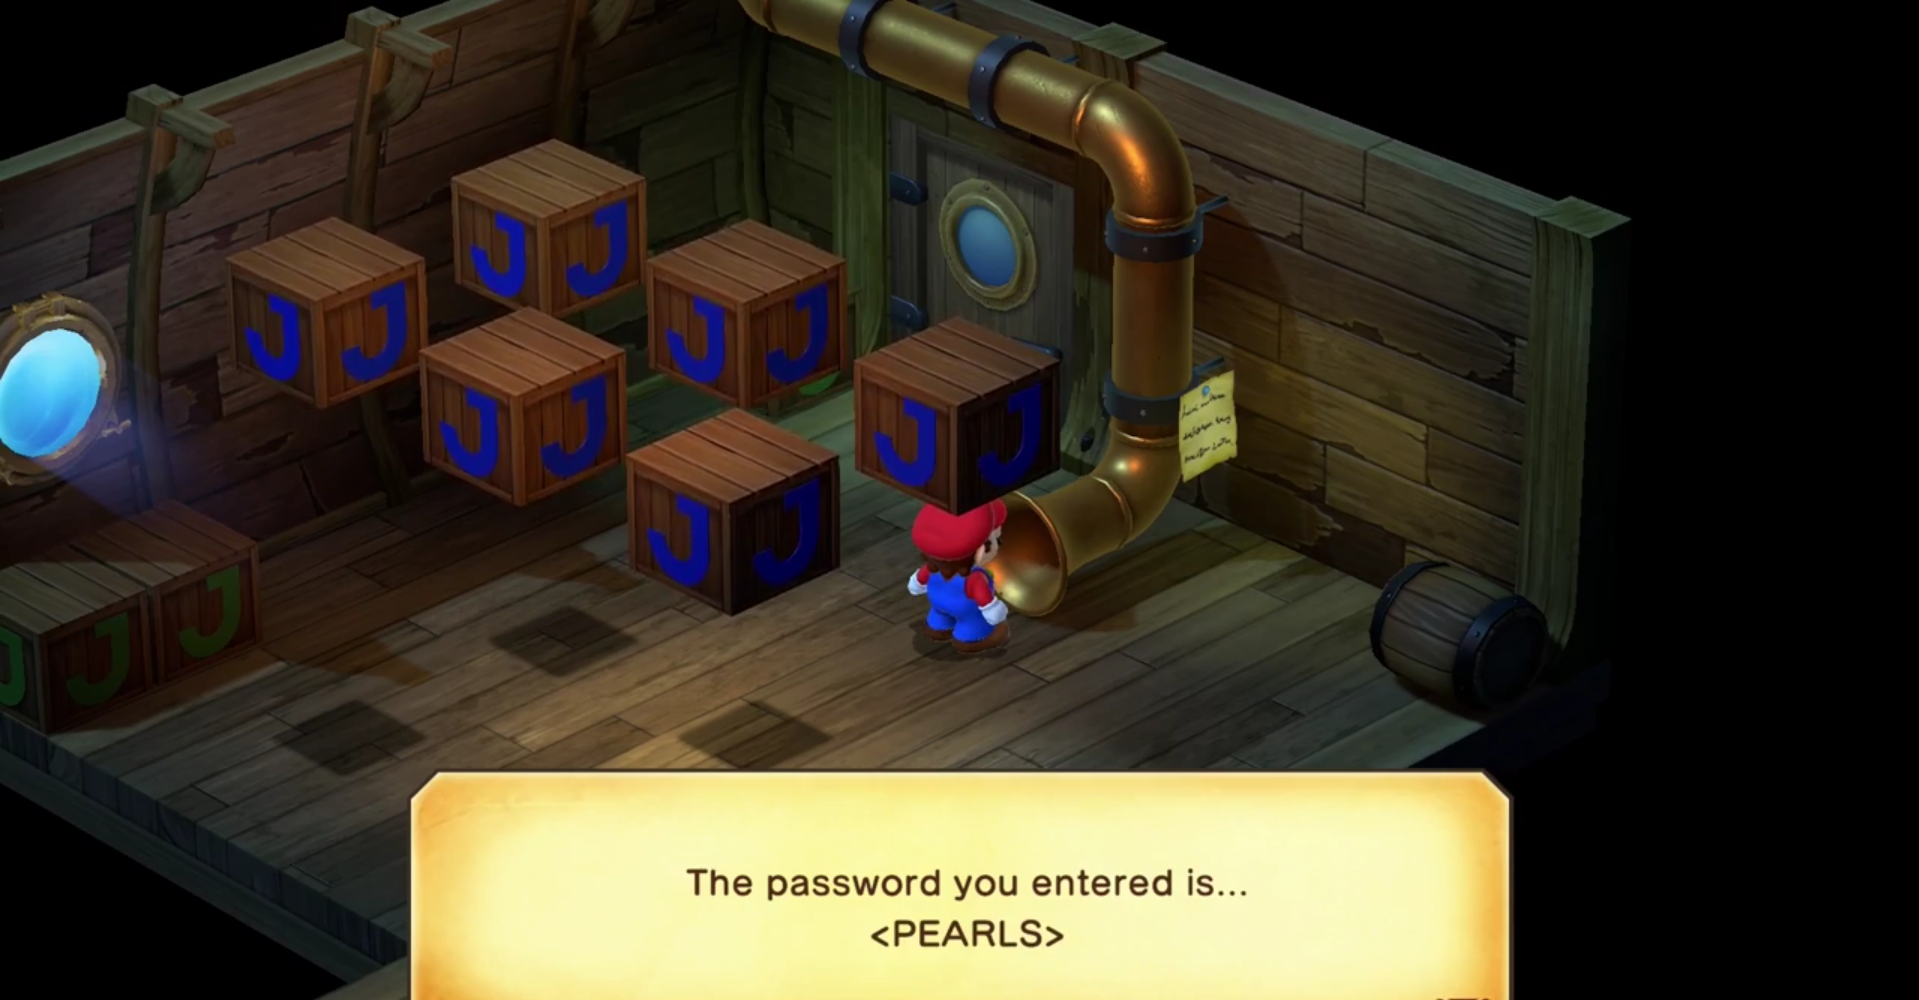 Mario entering the Sunken Ship password.